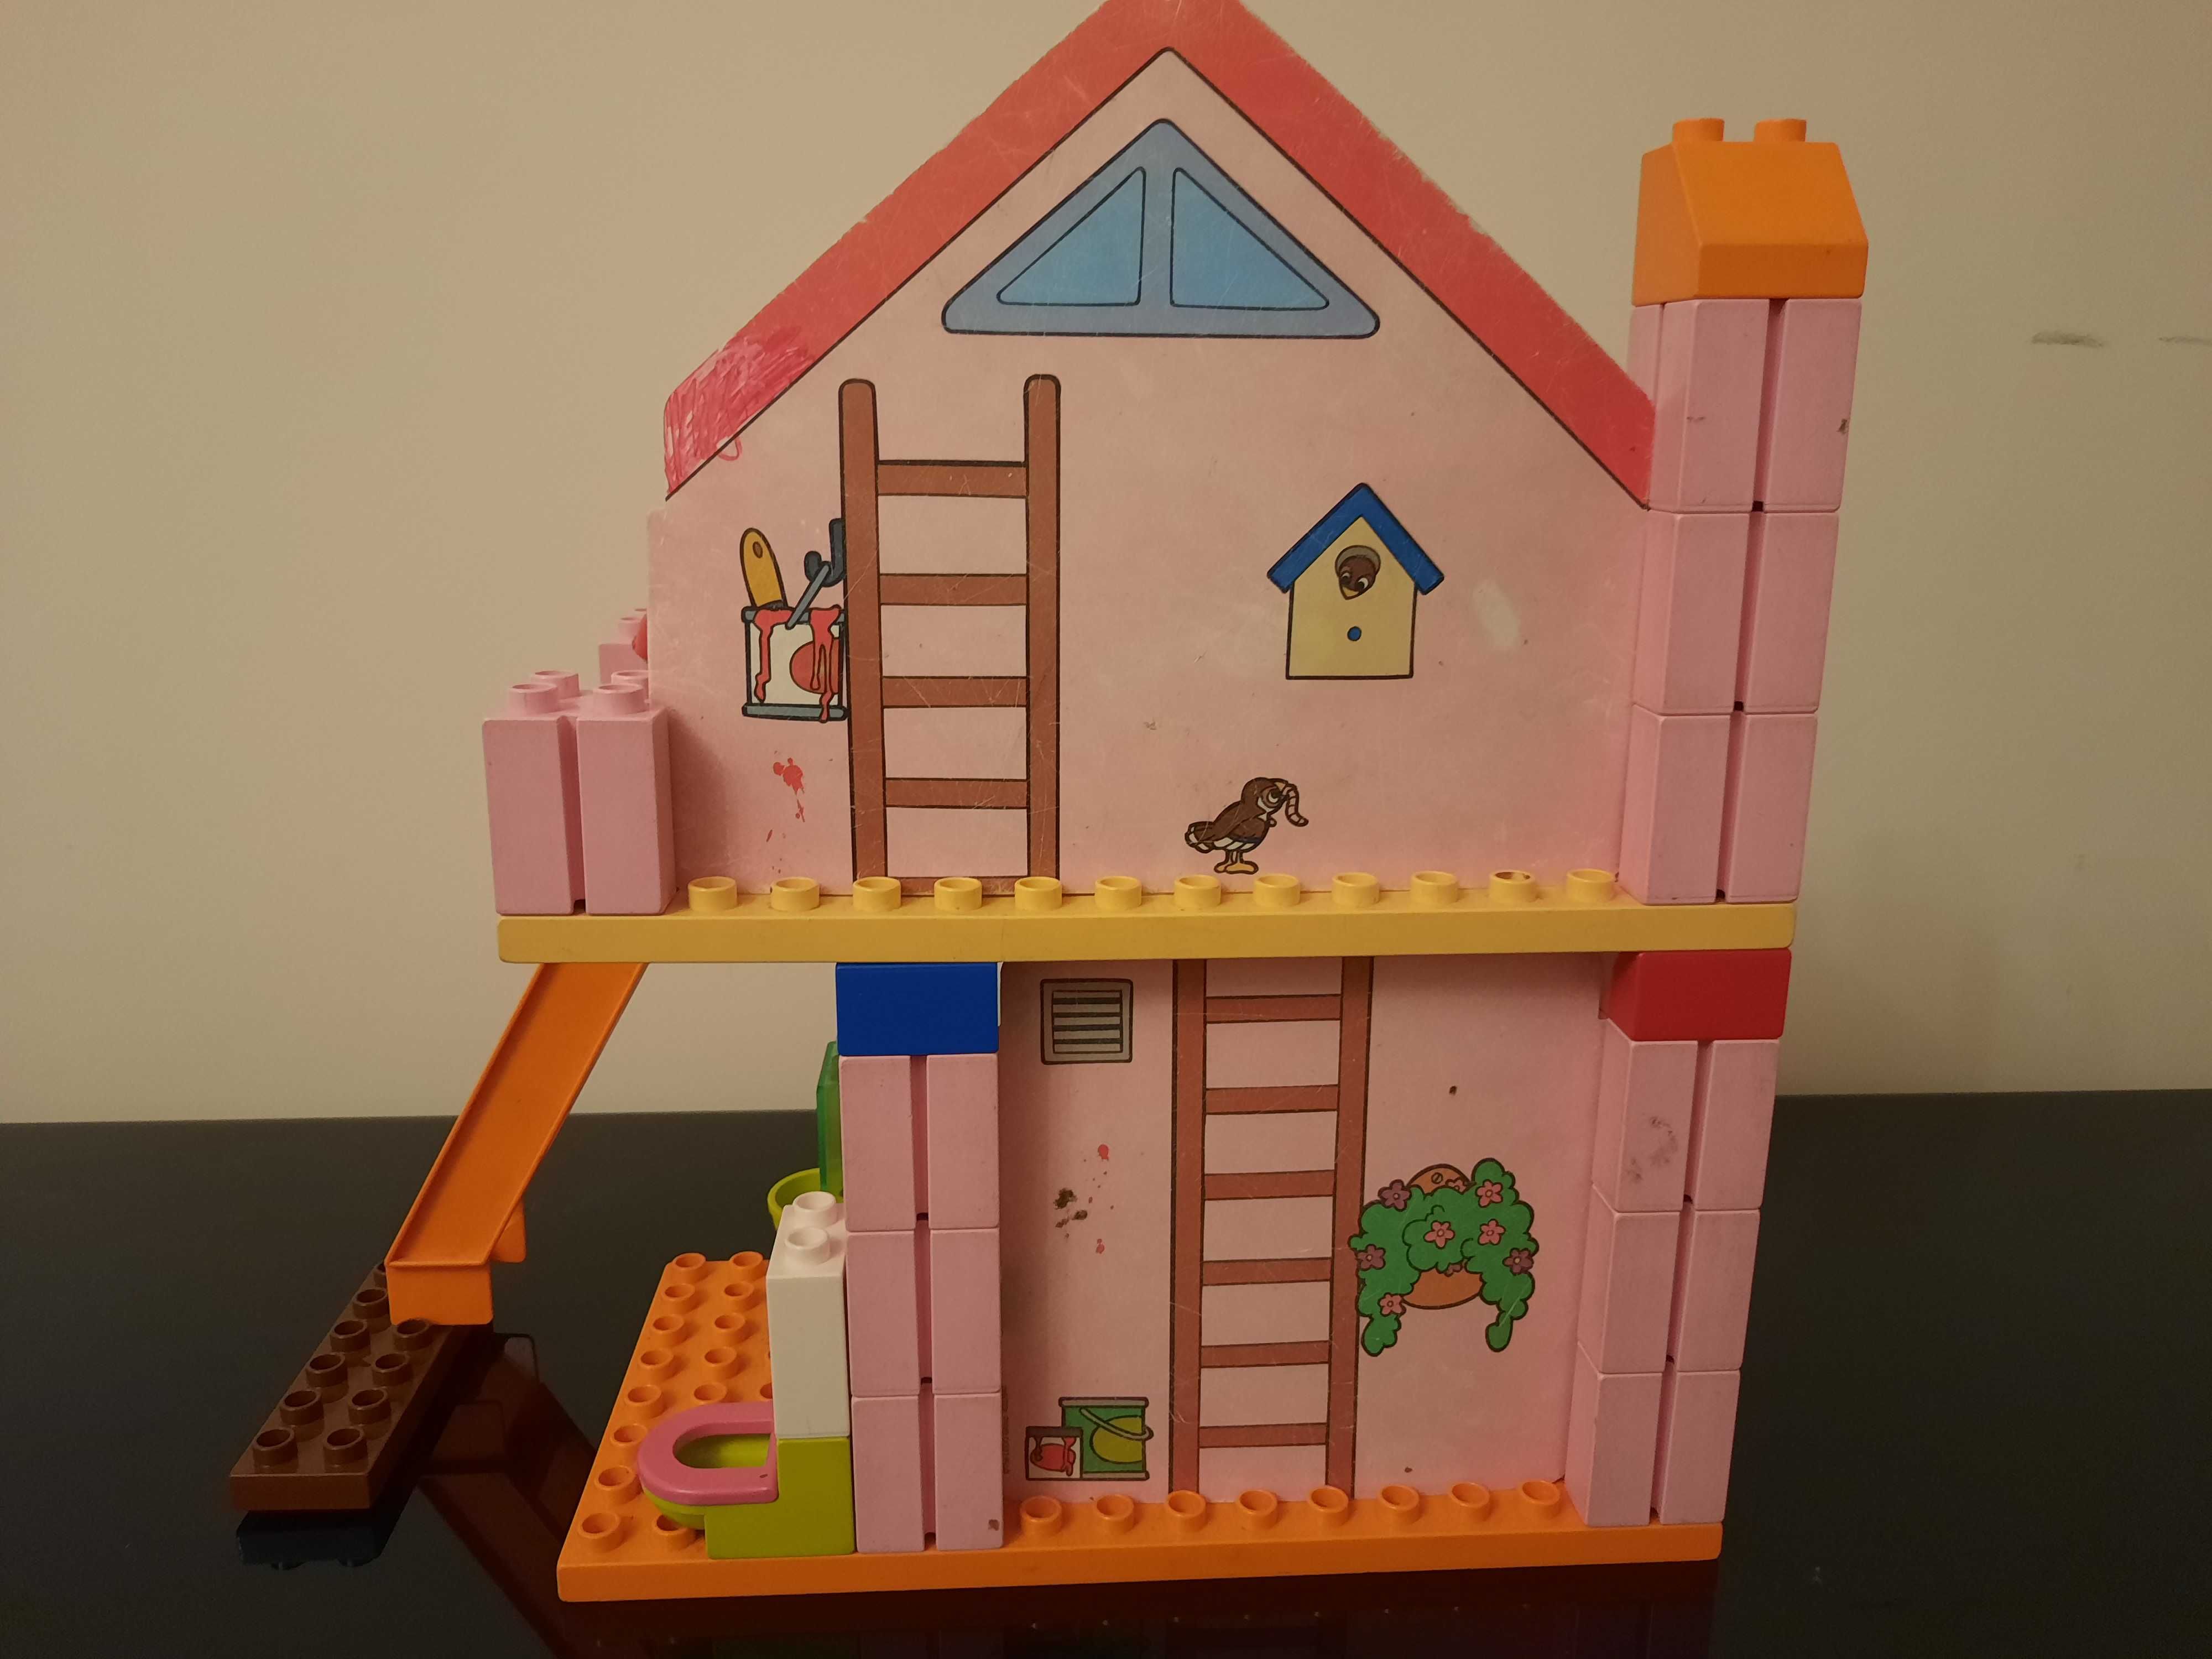 Lego Duplo domek rodzinny, model 4689, 2004 rok